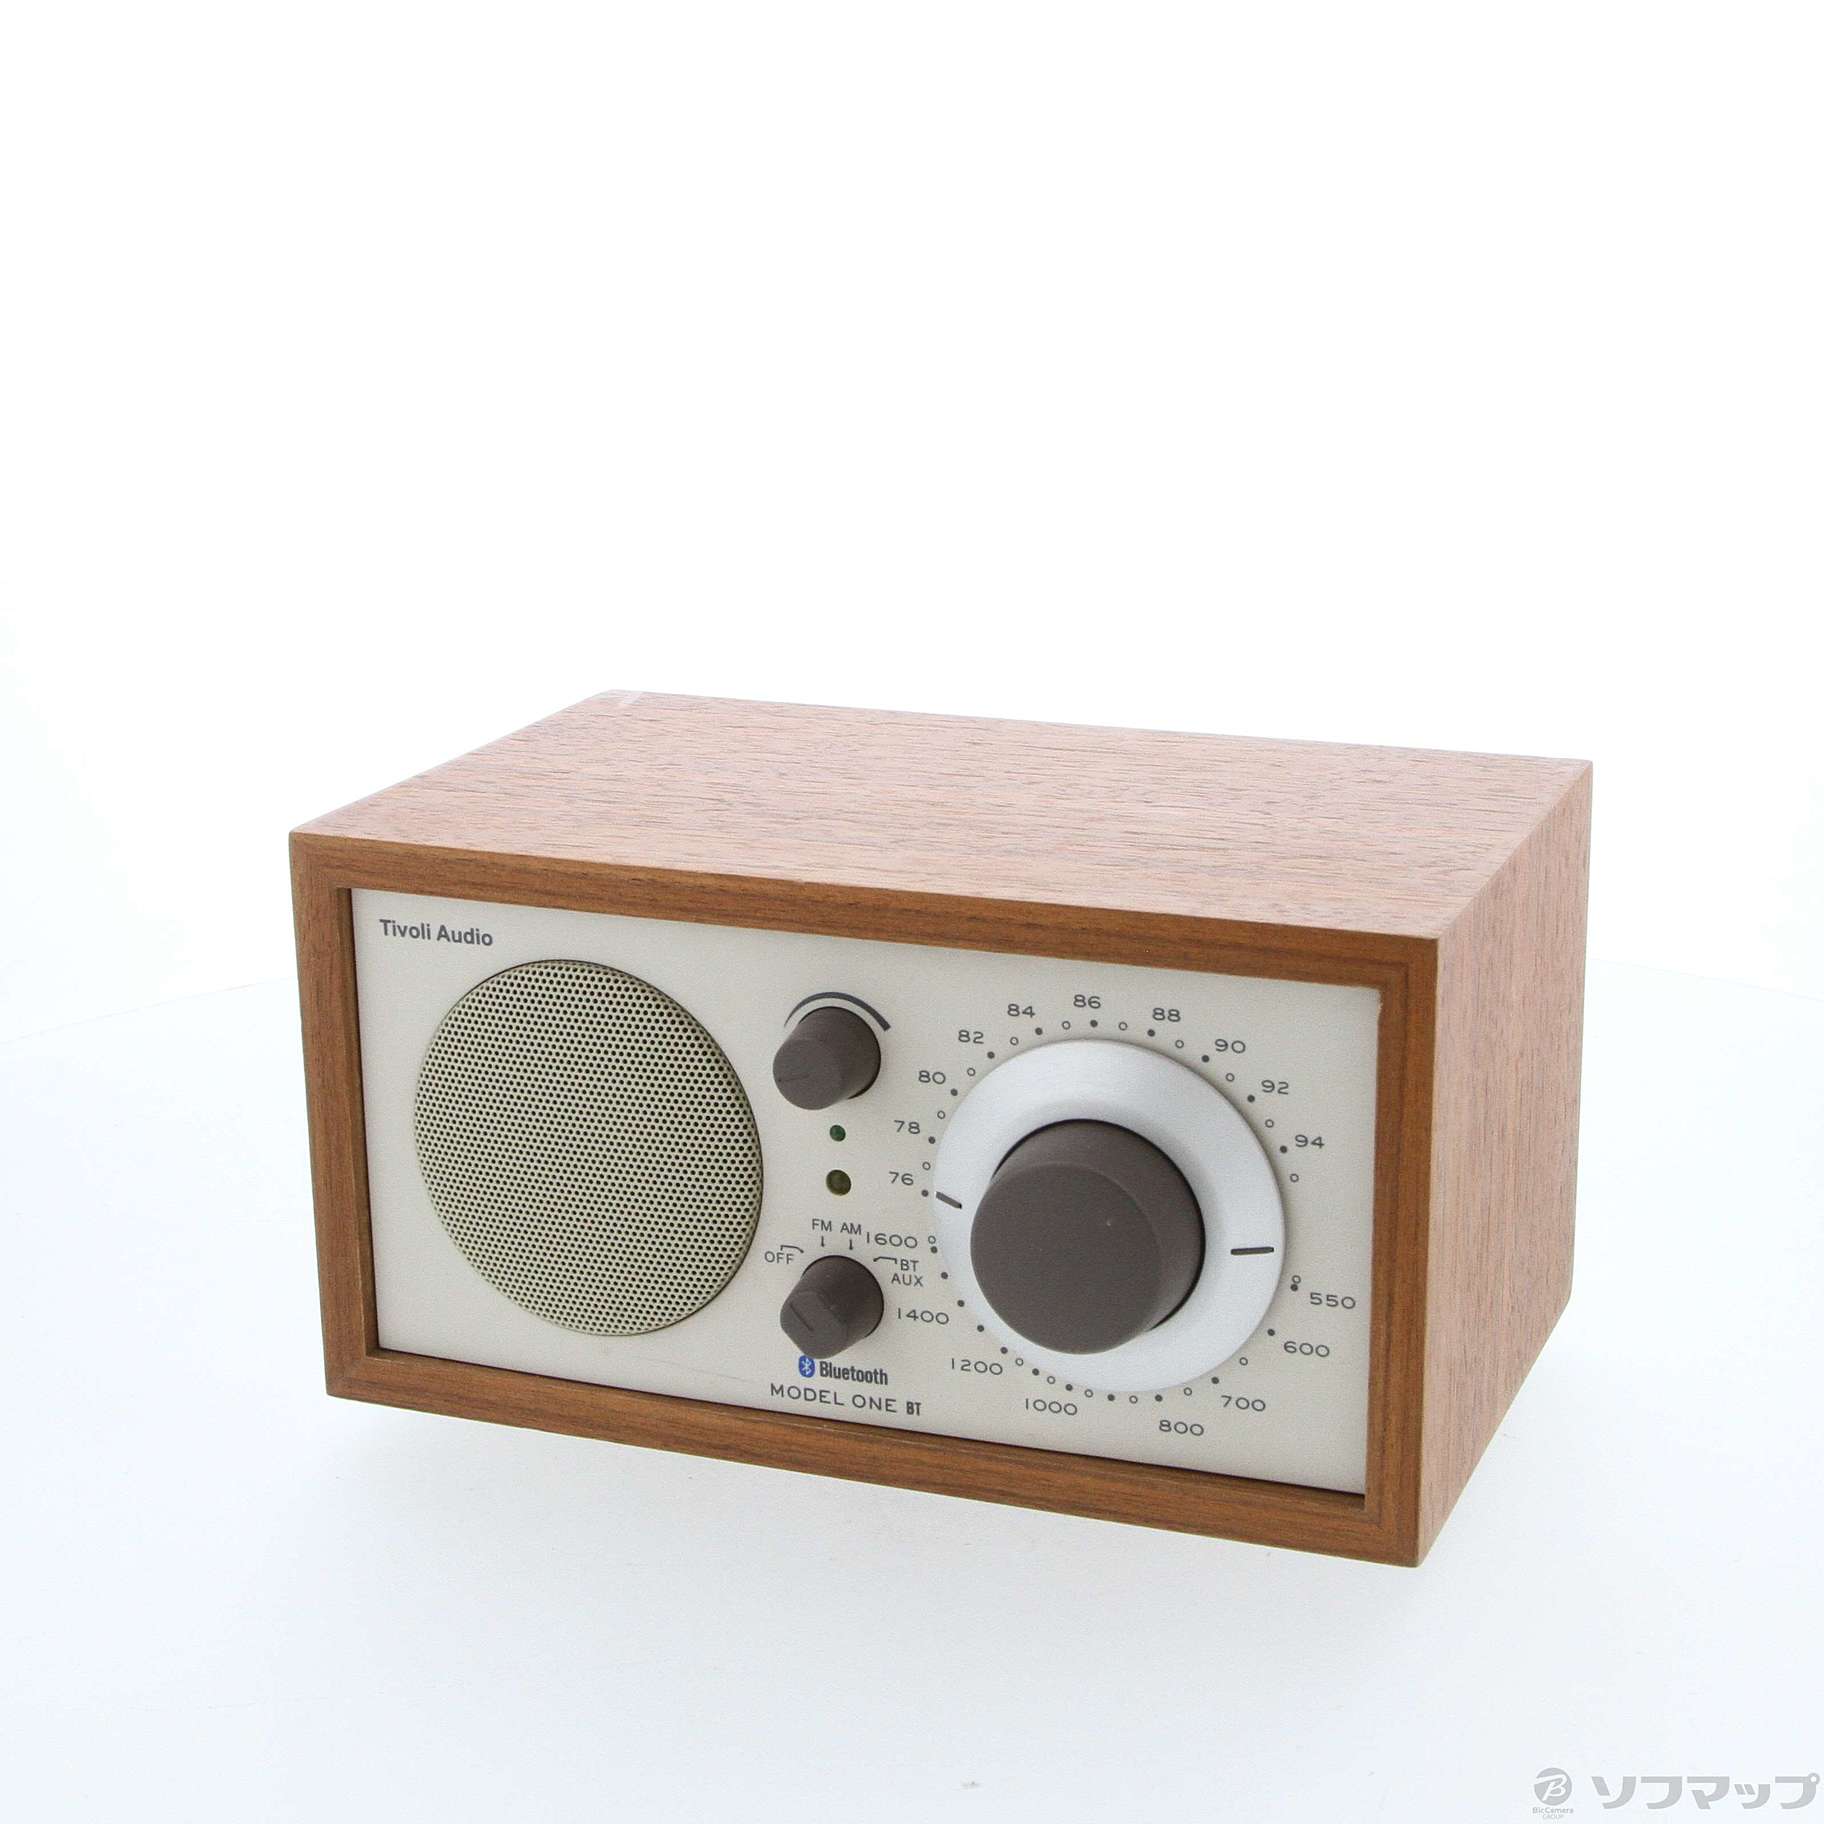 Tivoli Audio Model One BT チボリオーディオ モデルワン BT(クラッシックウォルナット ベージュ) 通販 